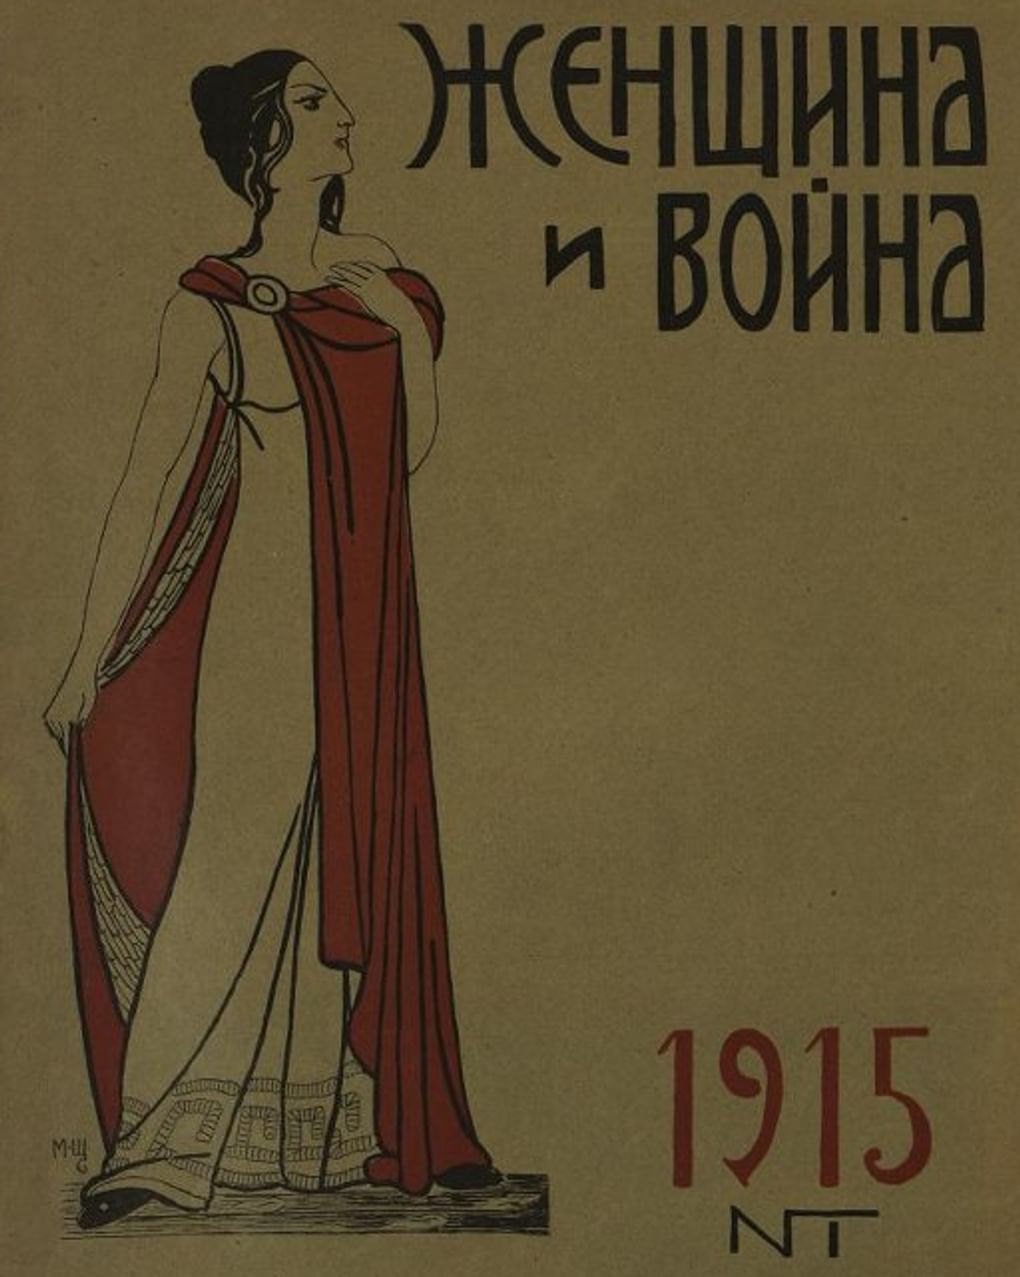 Журнал «Женщина и война» №1. 1915. Государственный исторический музей, Москва